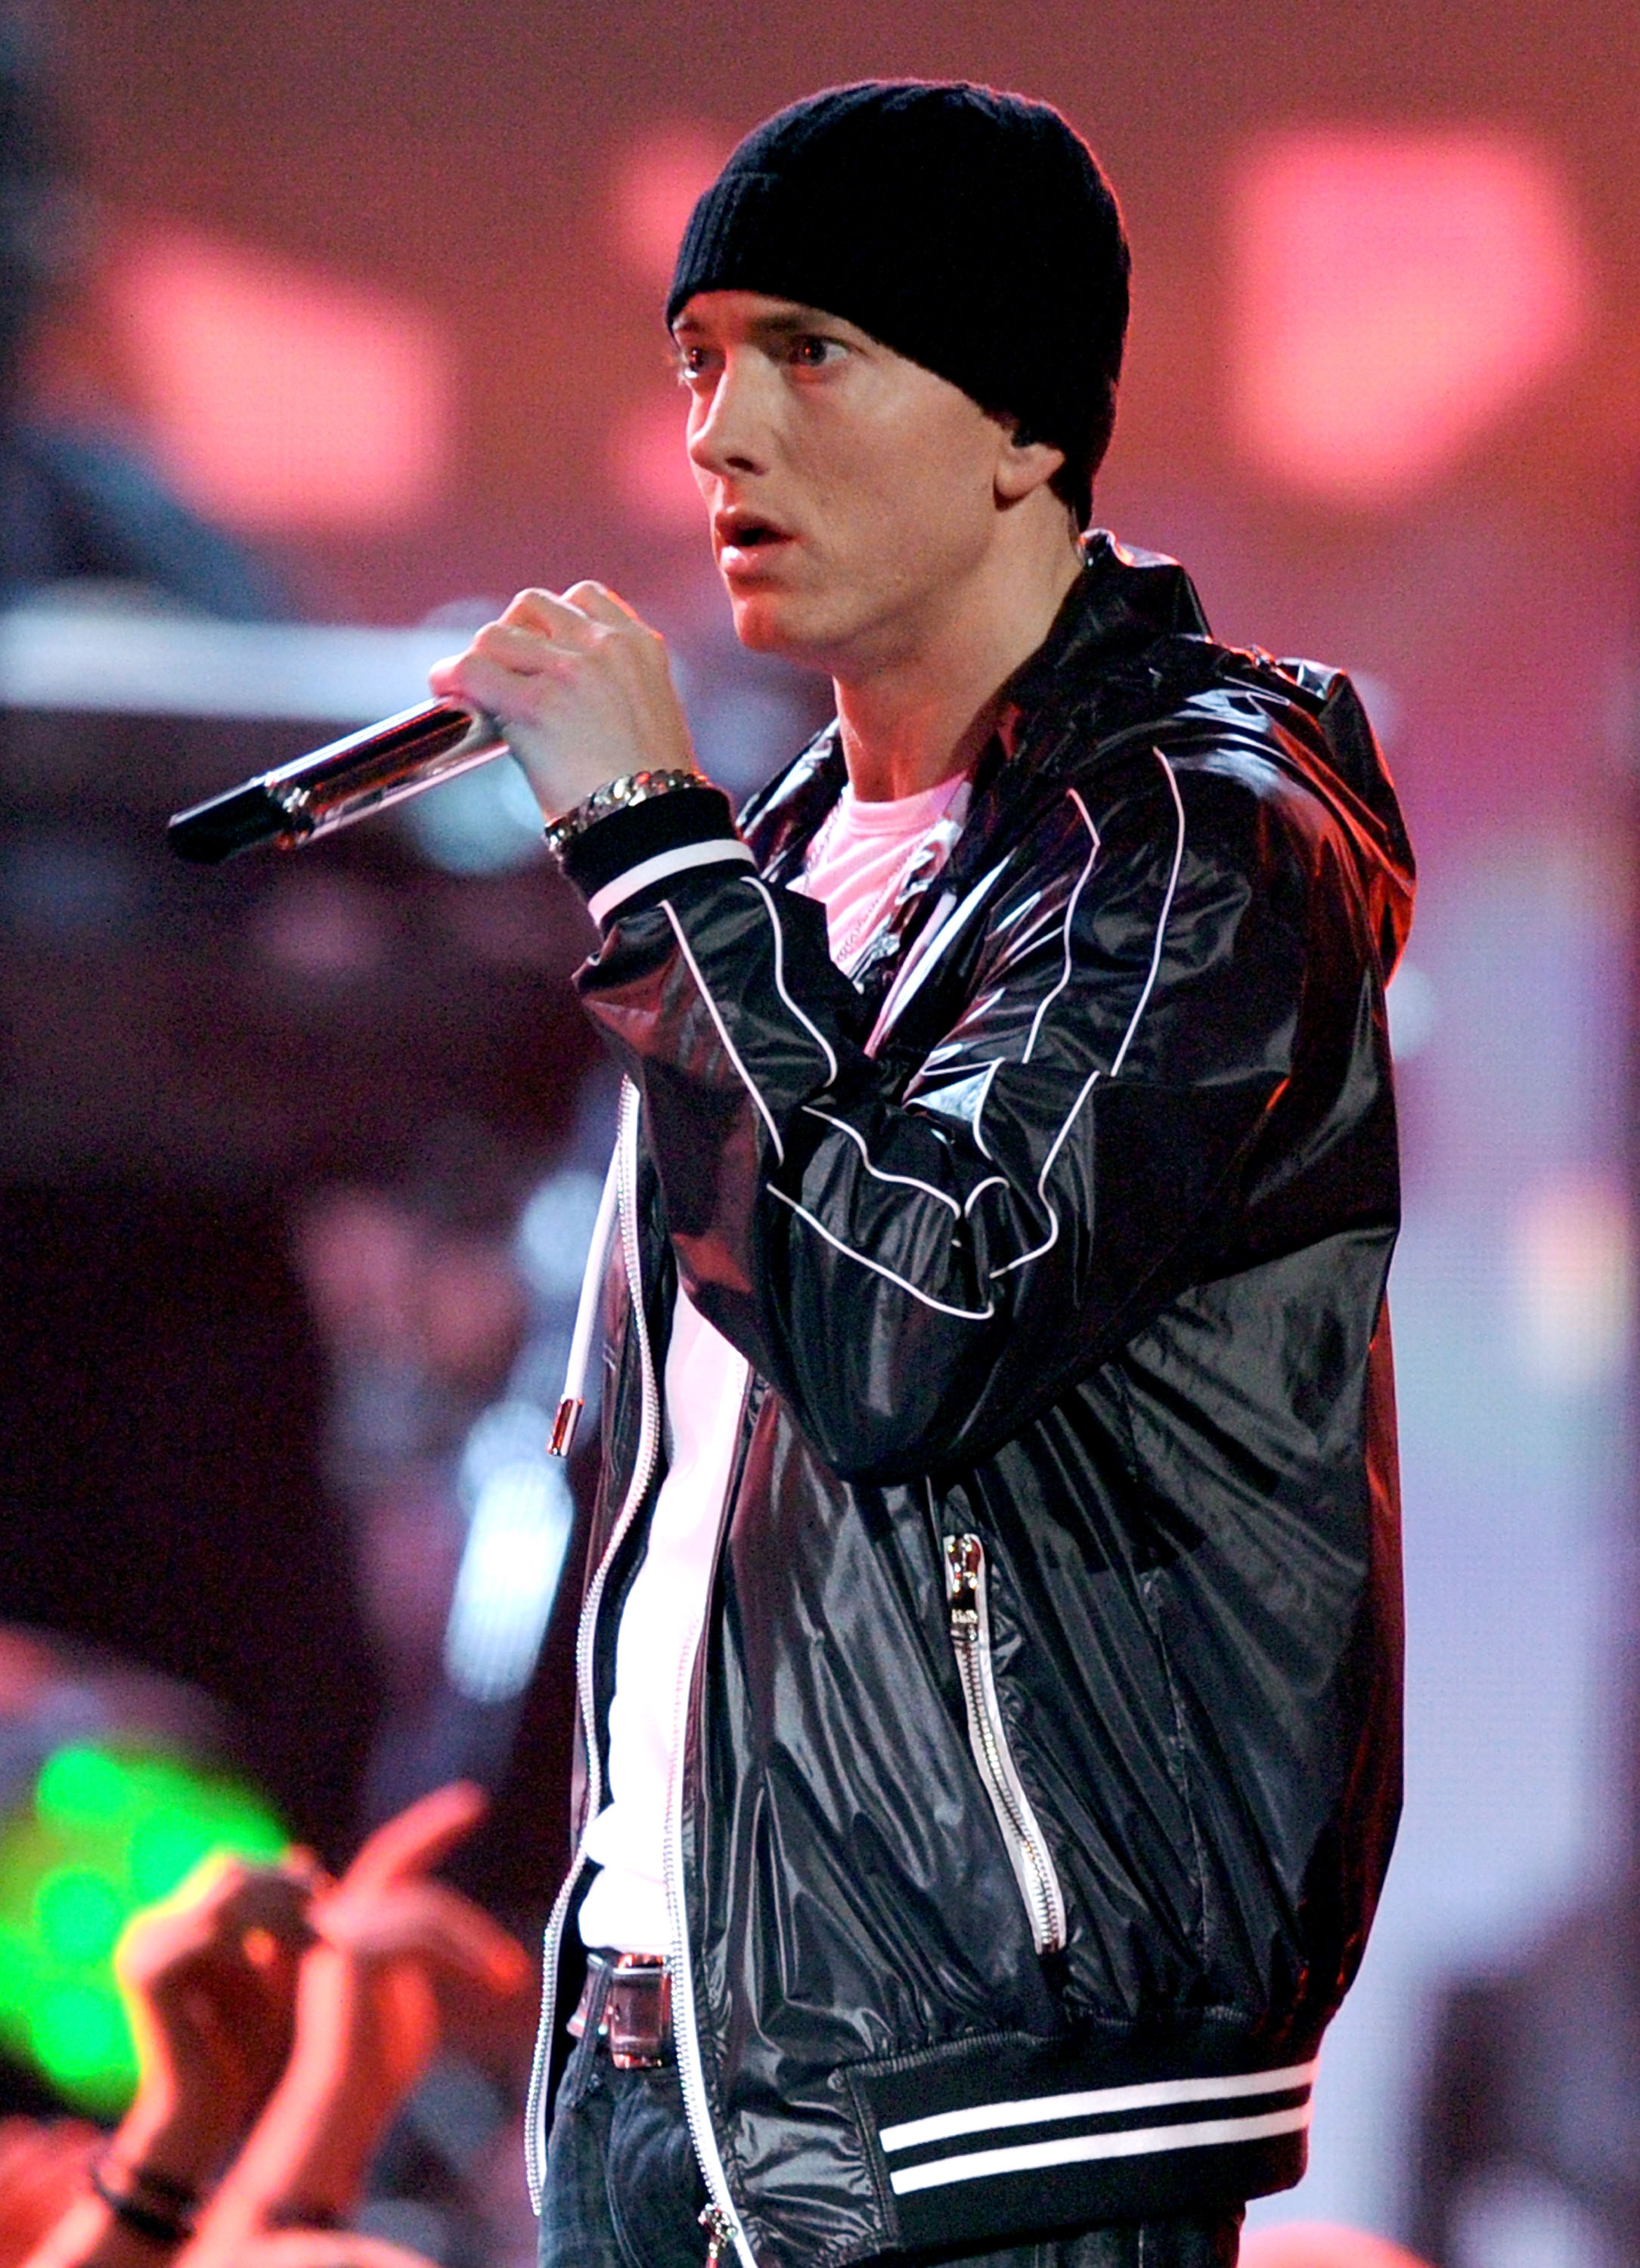 Eminem actúa en el escenario durante la 52ª edición de los Premios Grammy en el Staples Center el 31 de enero de 2010 en Los Ángeles, California | Fuente: Getty Images